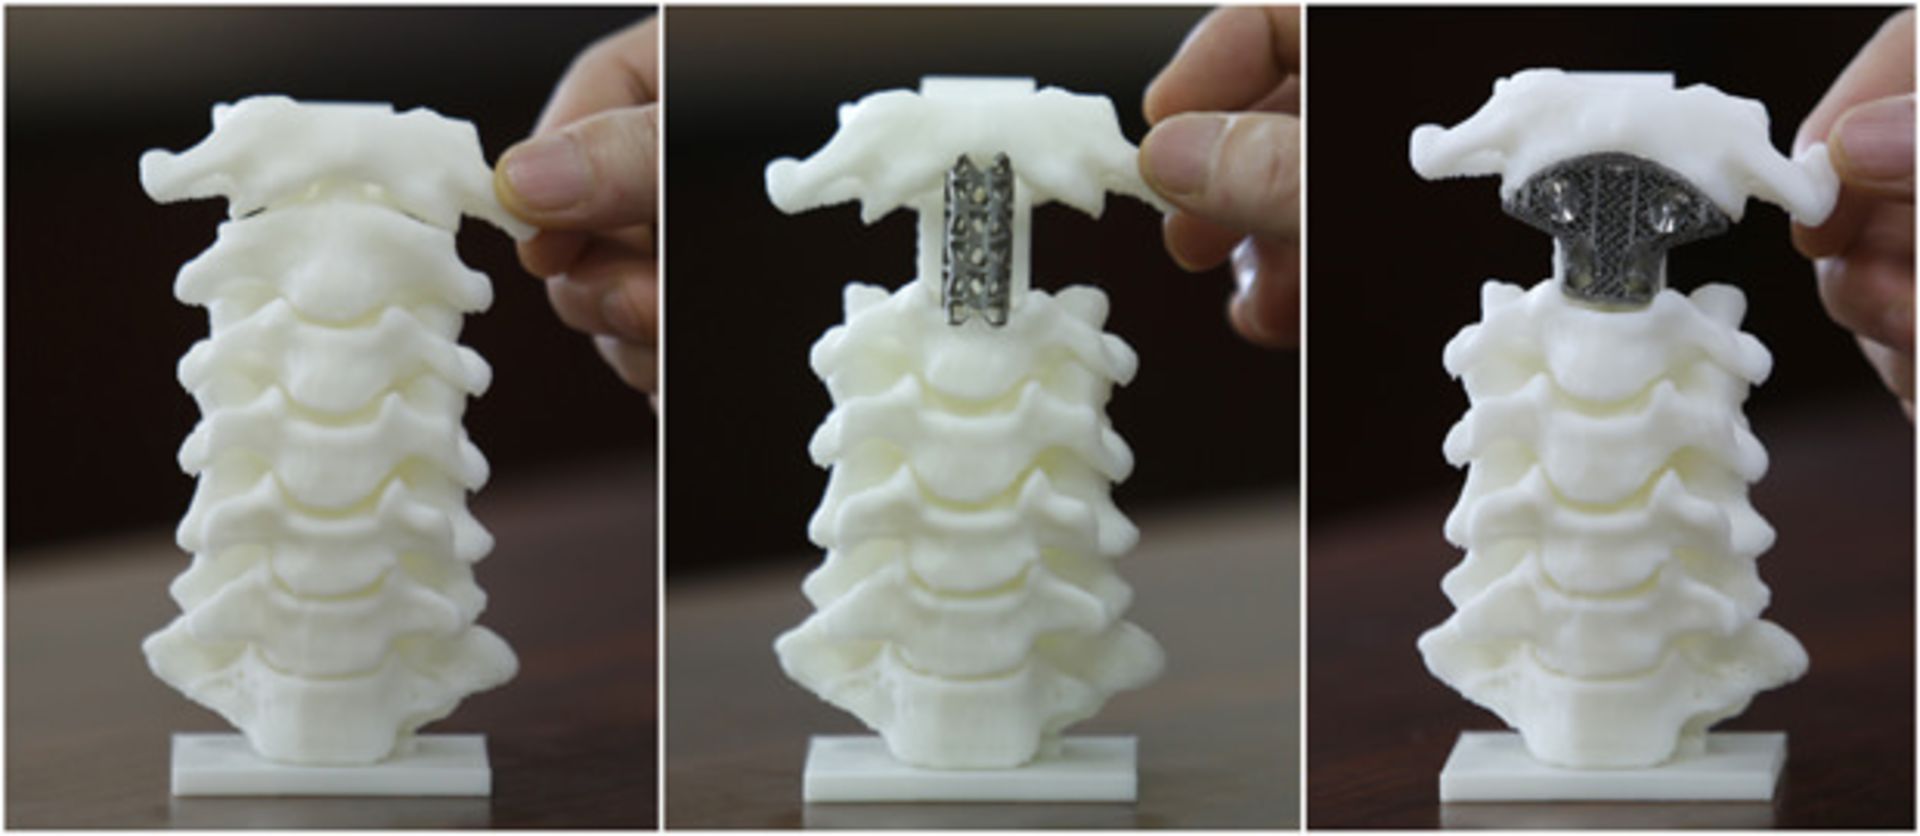 استفاده از چاپگر سه بعدی در جایگزینی مهره گردن سرطانی در چین